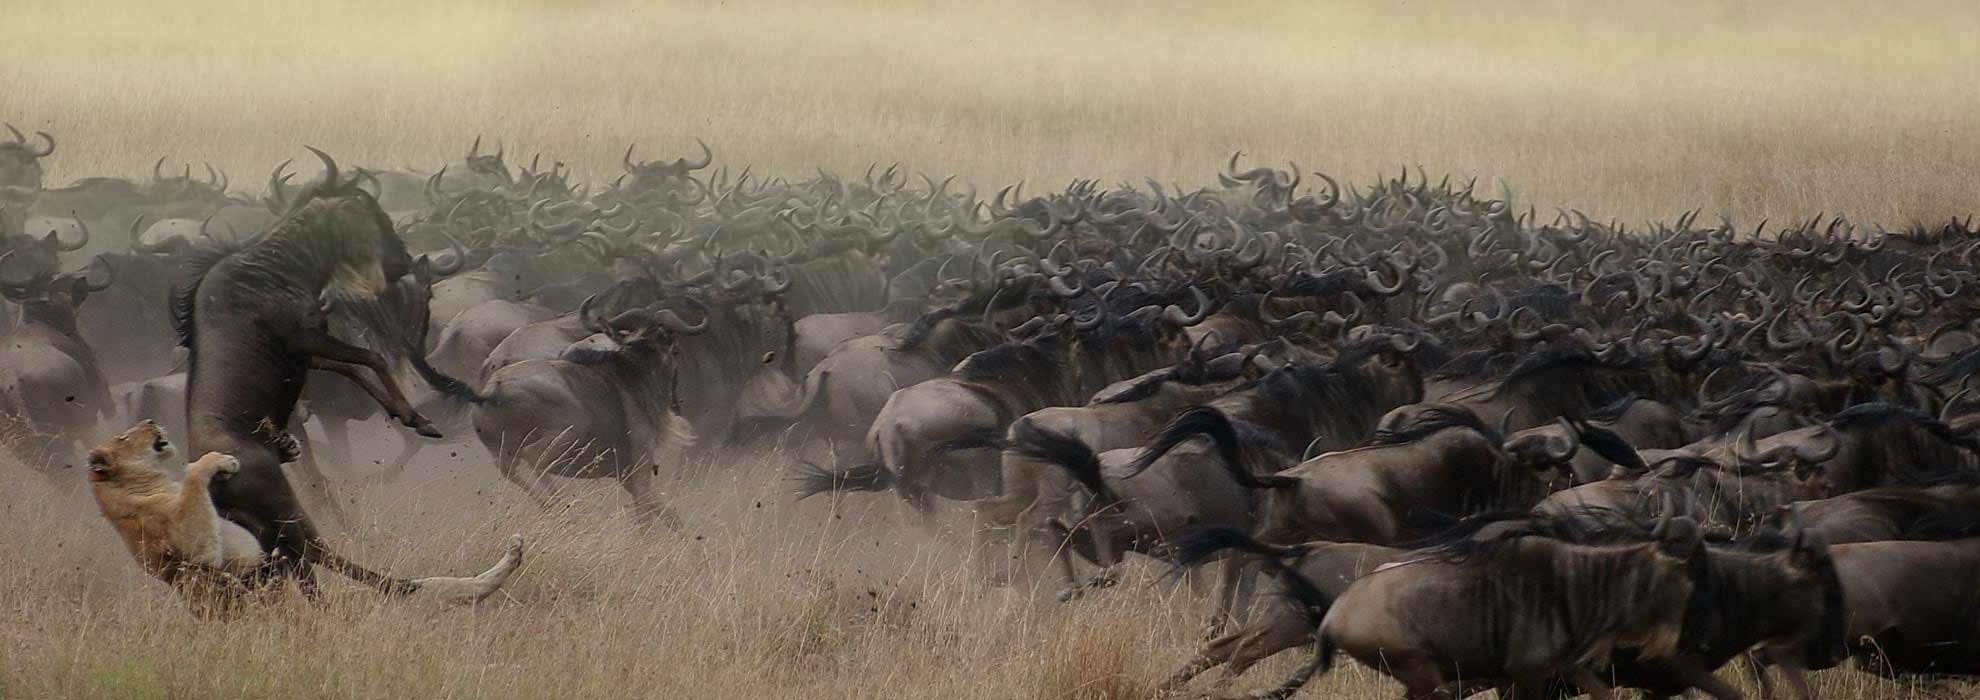 Migration safari Ndutu